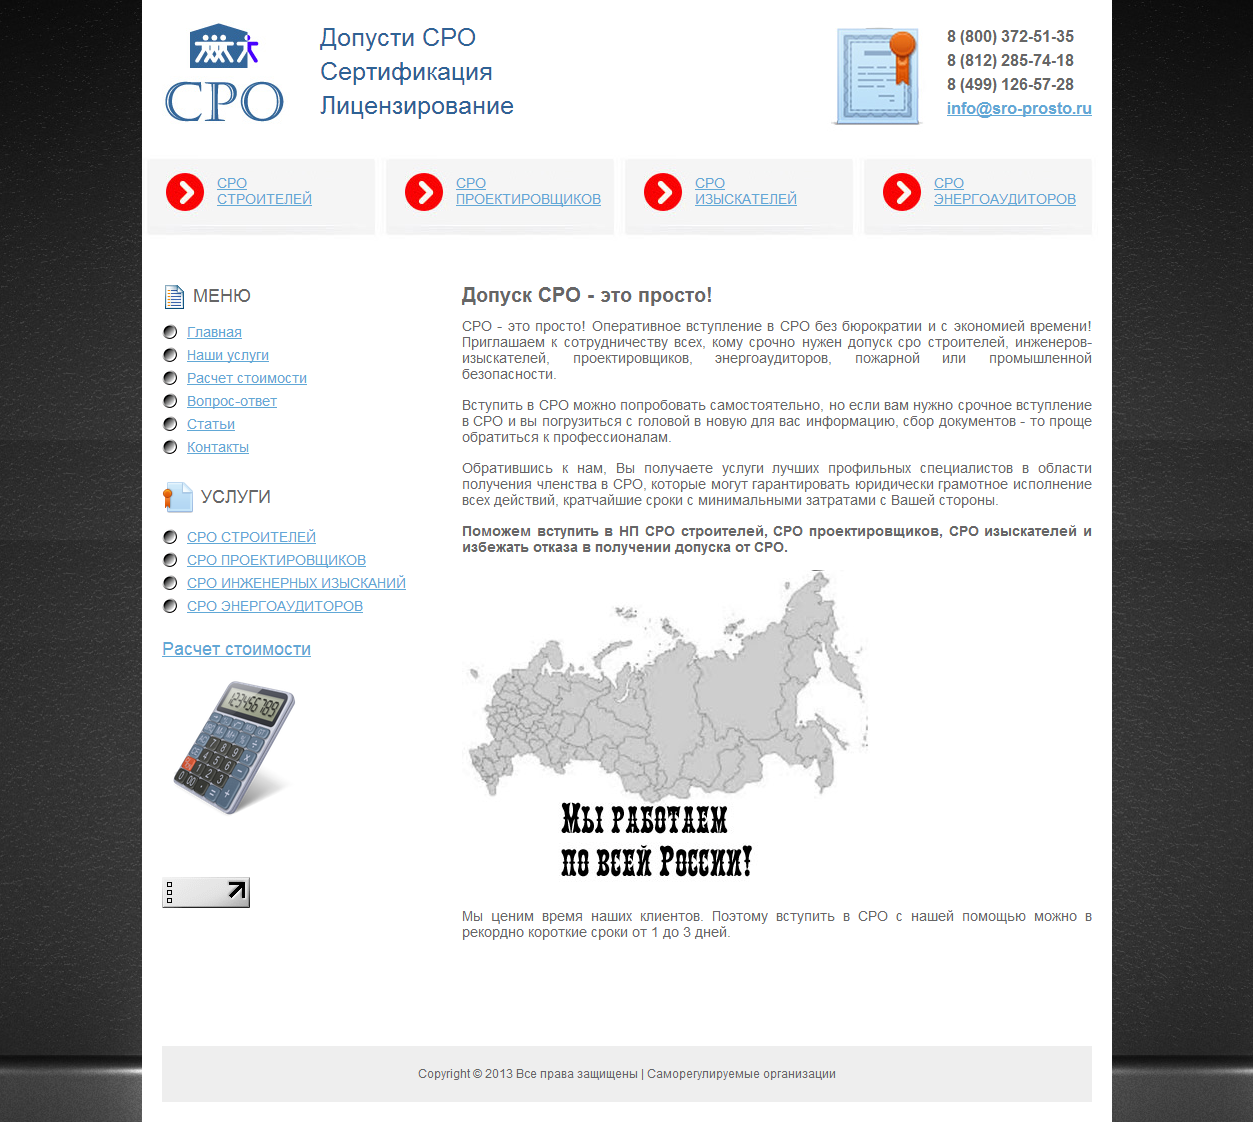 Сайт юридических услуг  "Допуски СРО по всей России"